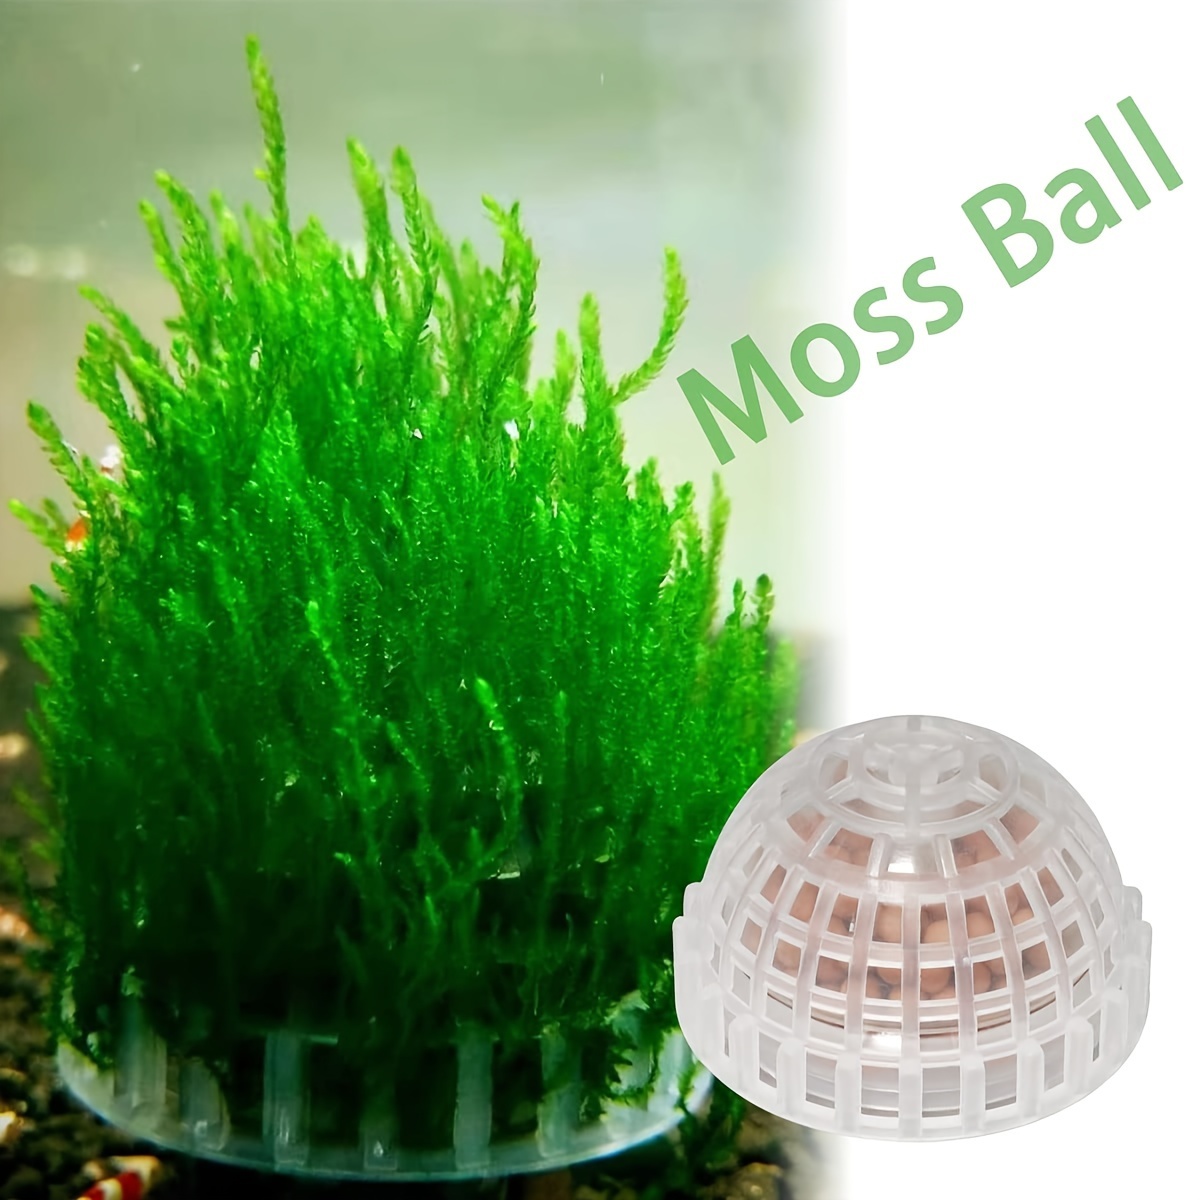 Aquatic Pet Supplies Decorations Aquarium Moss Ball Live Plants Filter Pet  Decor, Today's Best Daily Deals